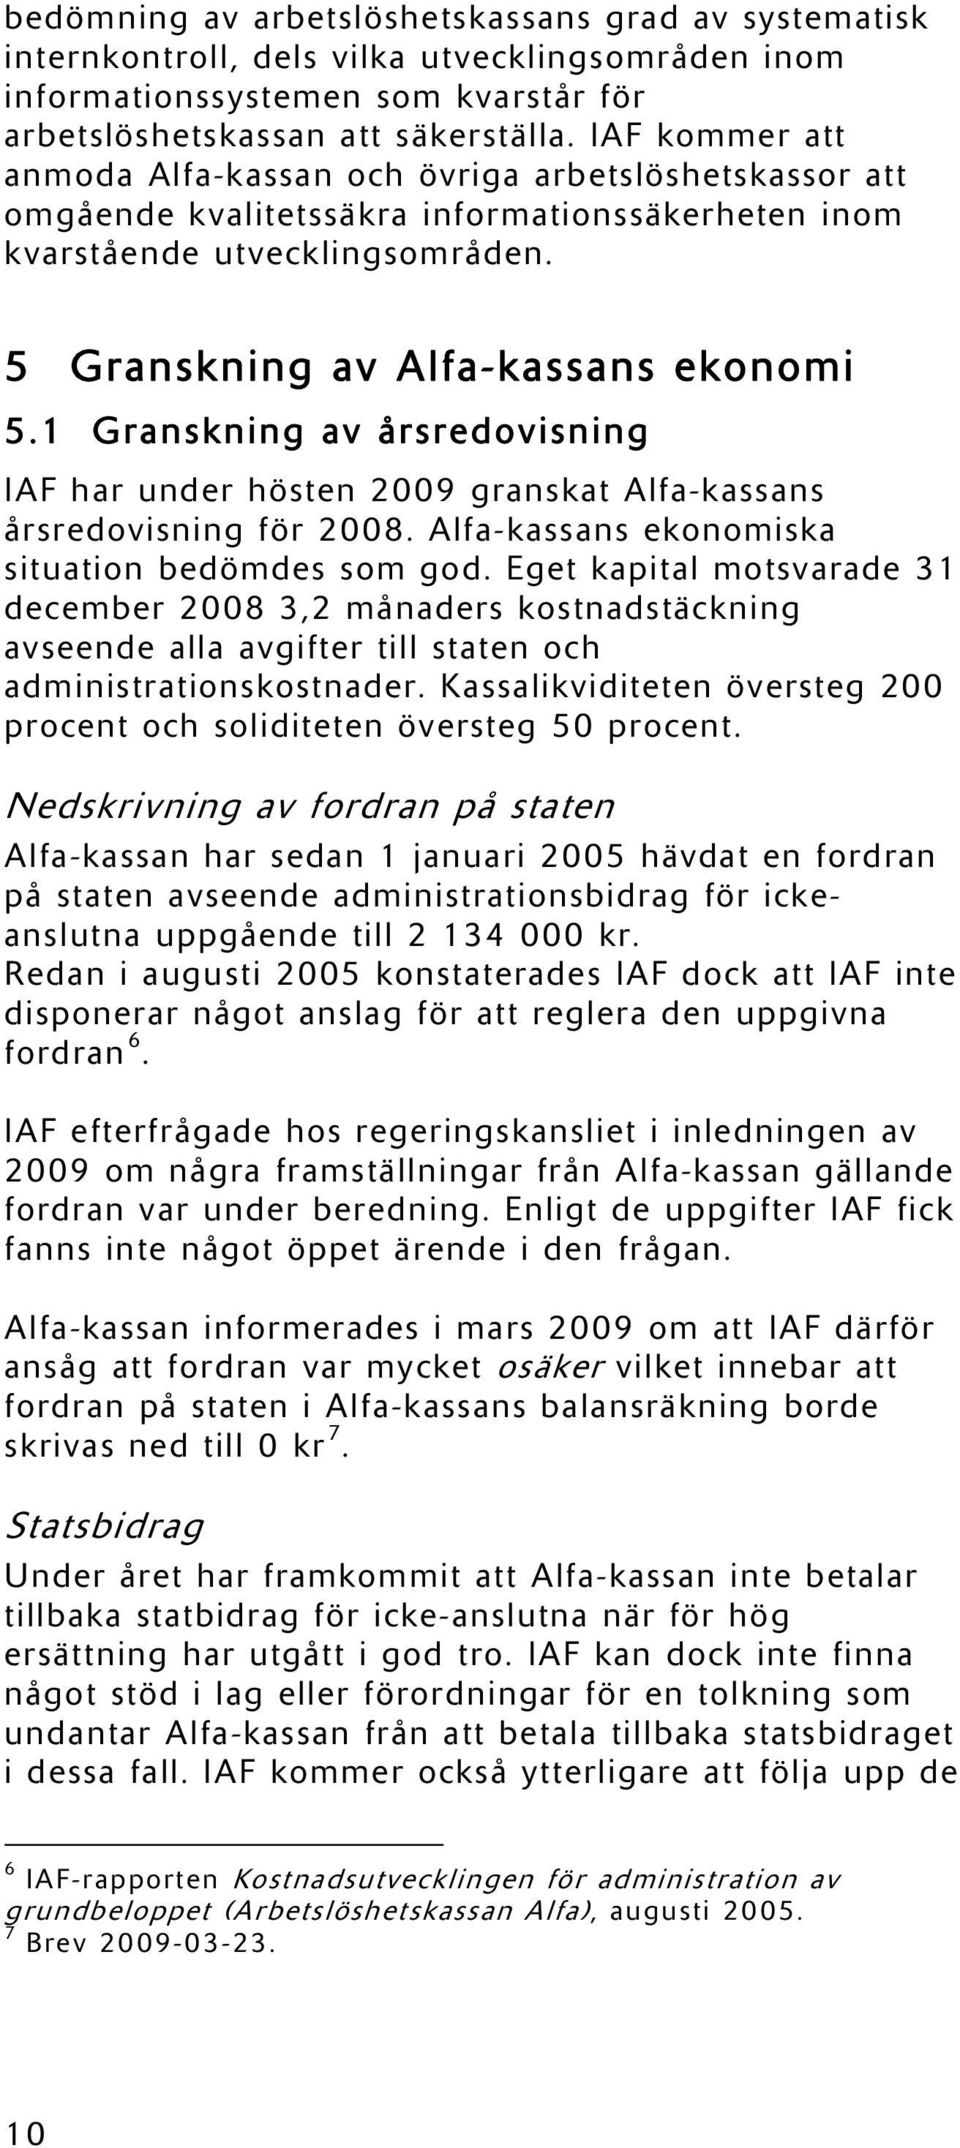 1 Granskning av årsredovisning IAF har under hösten 2009 granskat Alfa-kassans årsredovisning för 2008. Alfa-kassans ekonomiska situation bedömdes som god.